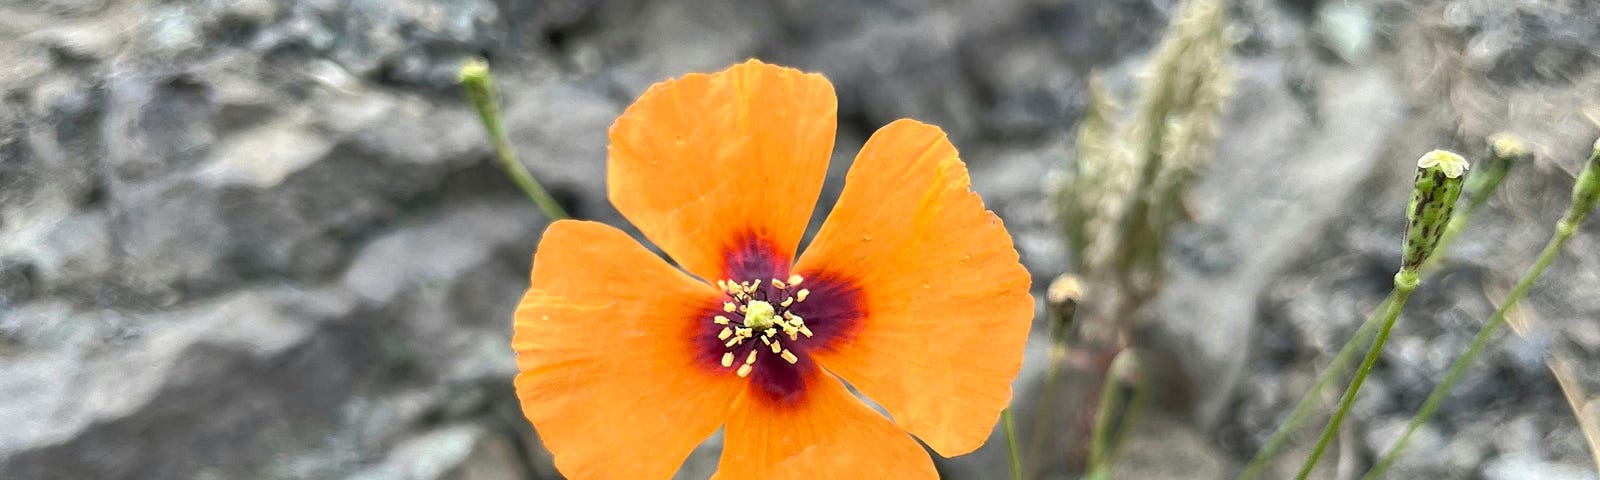 flower in cracked soil